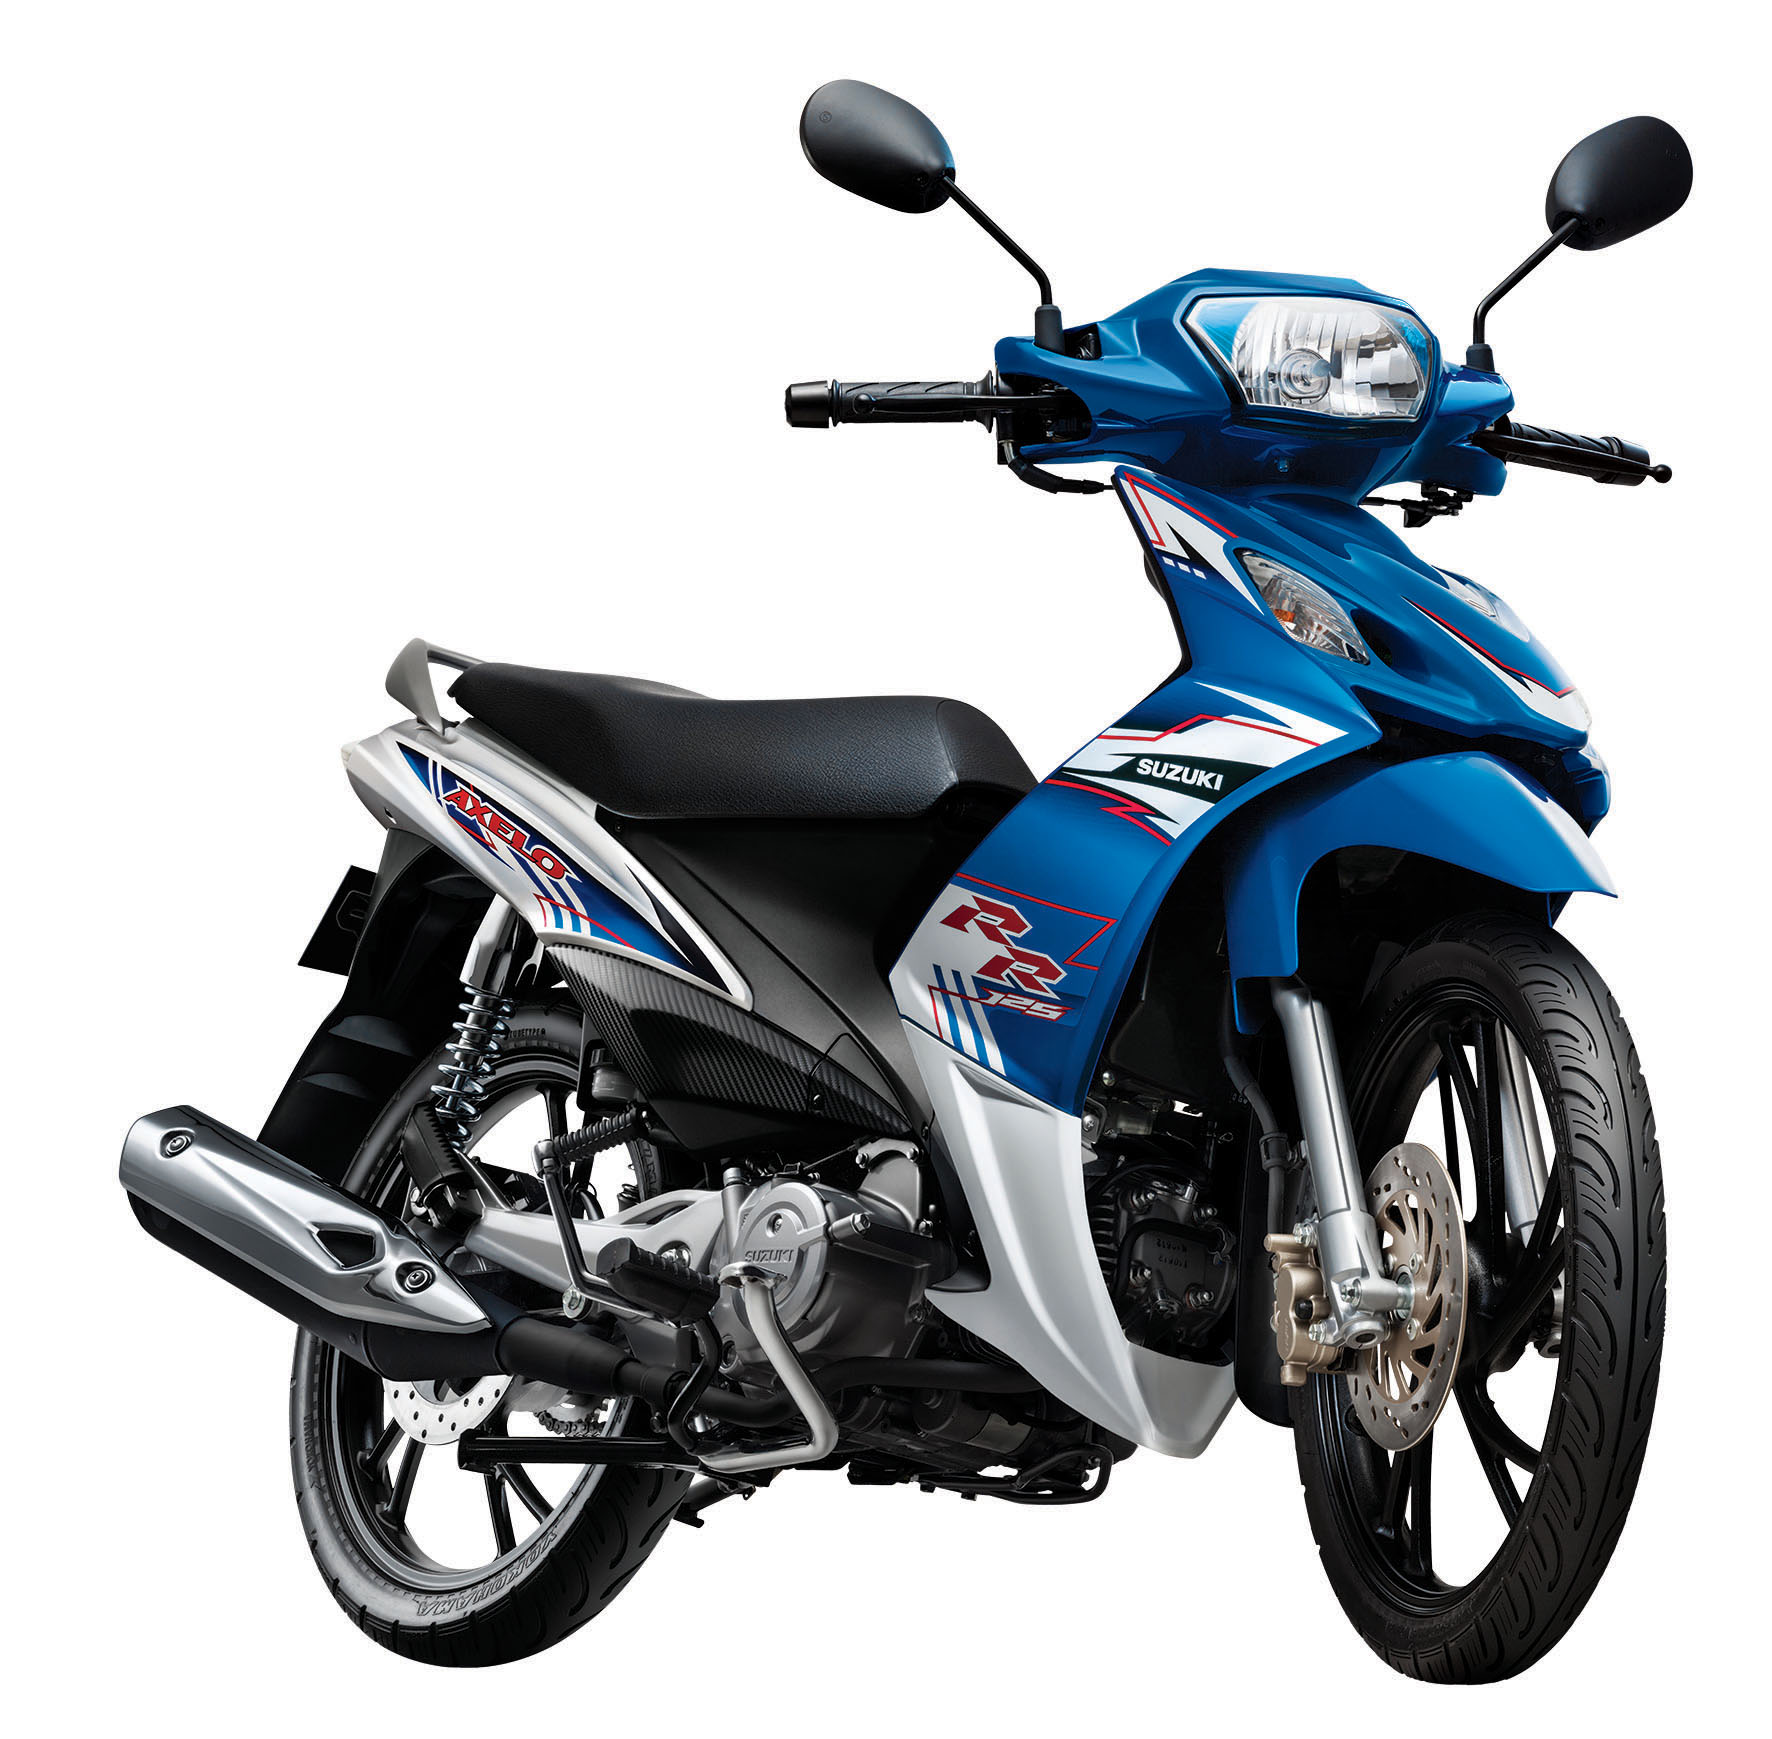 Suzuki ra mắt Axelo: 125cc, côn tay, giá 26 triệu đồng | Tinh tế